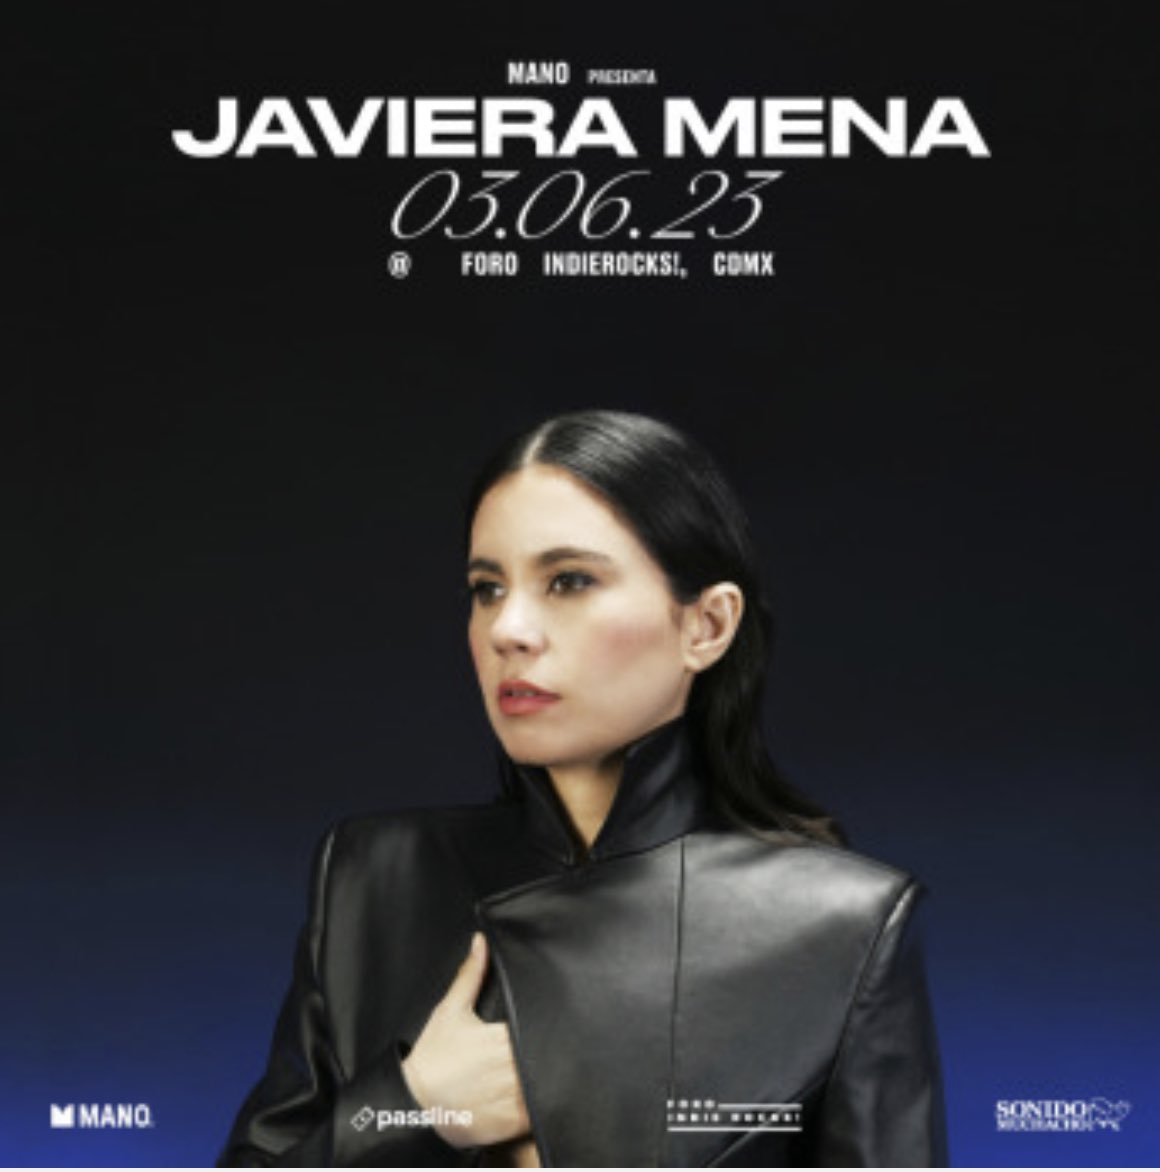 Voy viajando a Ciudad de México y veo que detrás mío entrando al avión está Javiera Mena 😵😵😵. Soy muy tímido pero me atreví a hablarle. Muy amorosa, sencilla y simpática. La admiro infinito por su talento. El 3 de junio toca en Foro Indie Rocks en CDMX 👏🏻👏🏻👏🏻 @javieramena